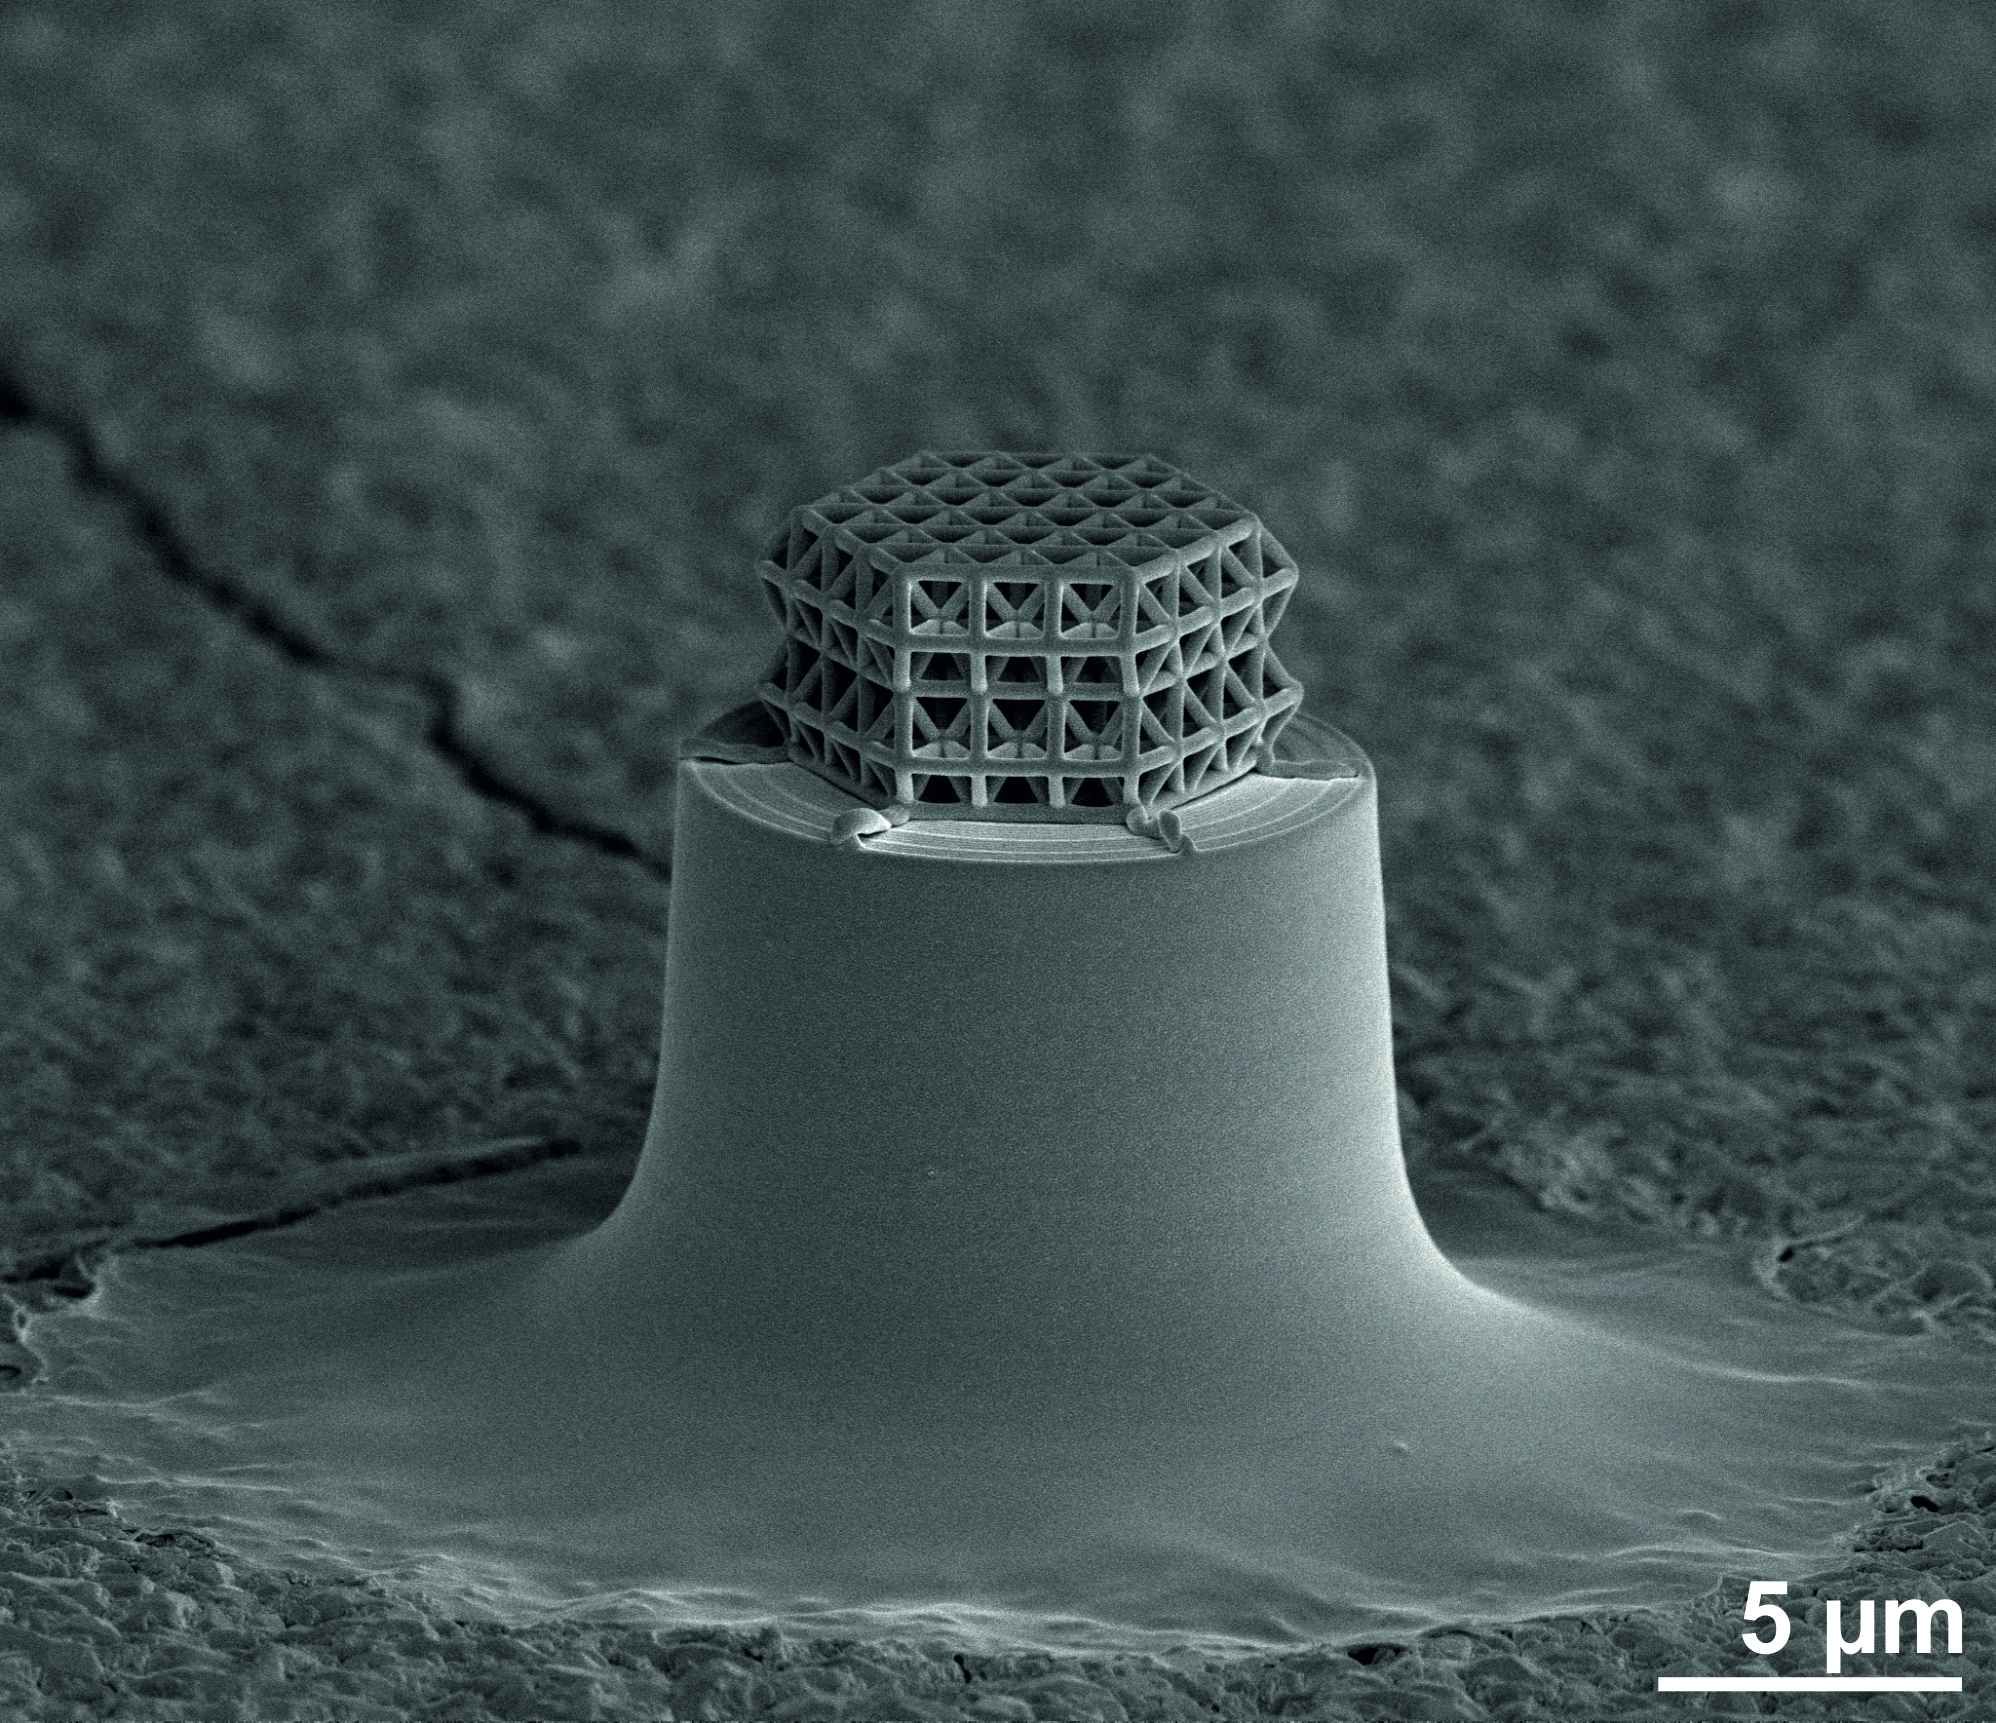 Los puntales y riostras tienen 0,2 micras de diámetro. El retículo tiene en torno a 10 micras de tamaño. Imagen: J. Bauer. Fuente: KIT.